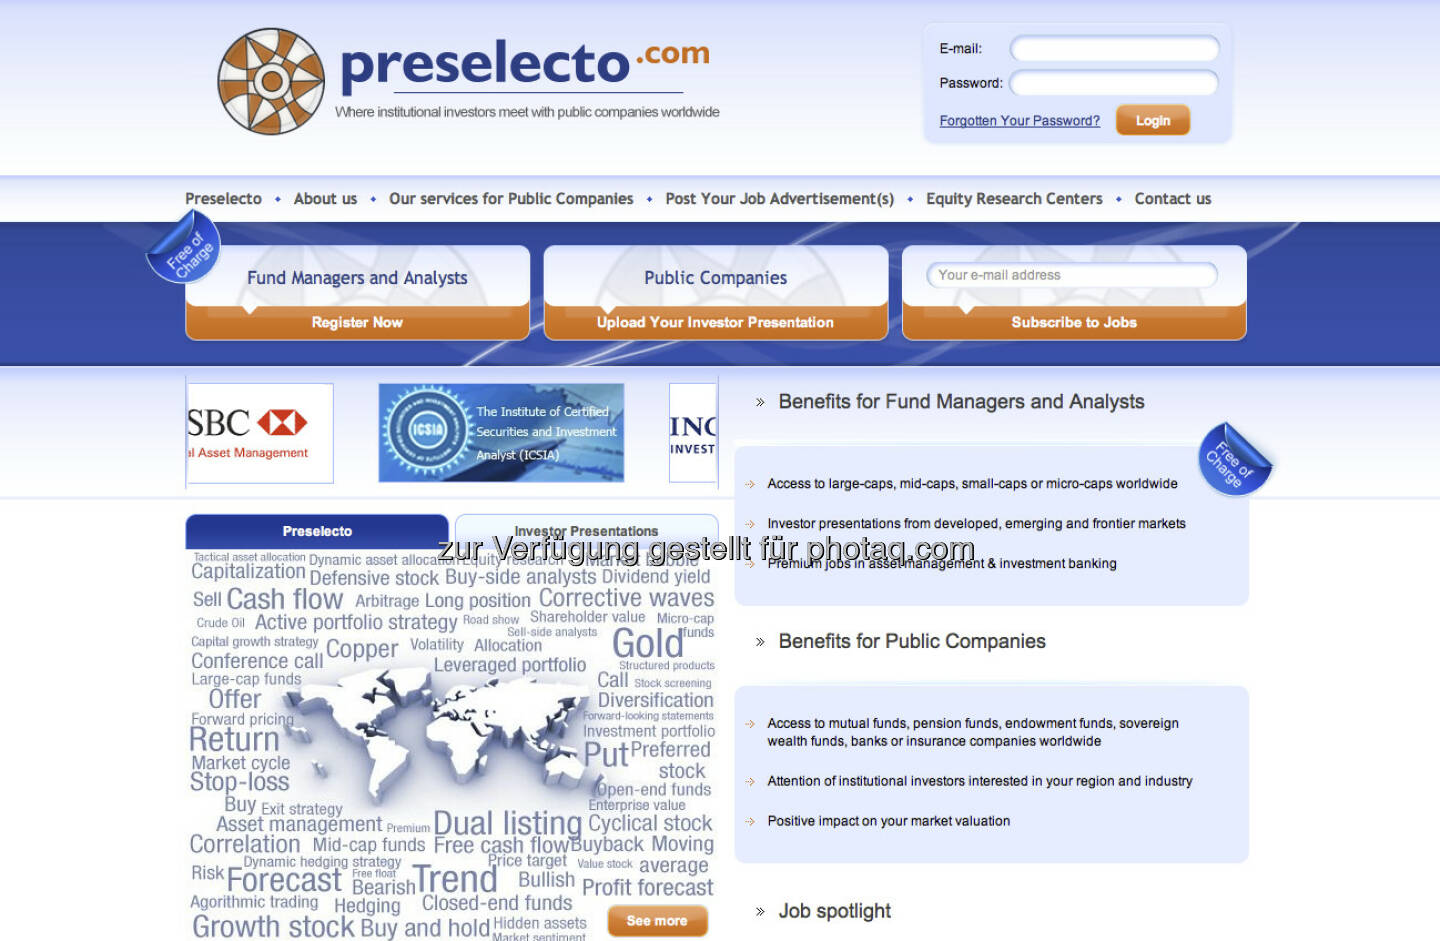 http://www.preselecto.com/ - eine neue Profi-Plattform, die Institutionelle mit Börsenotierten verbinden will